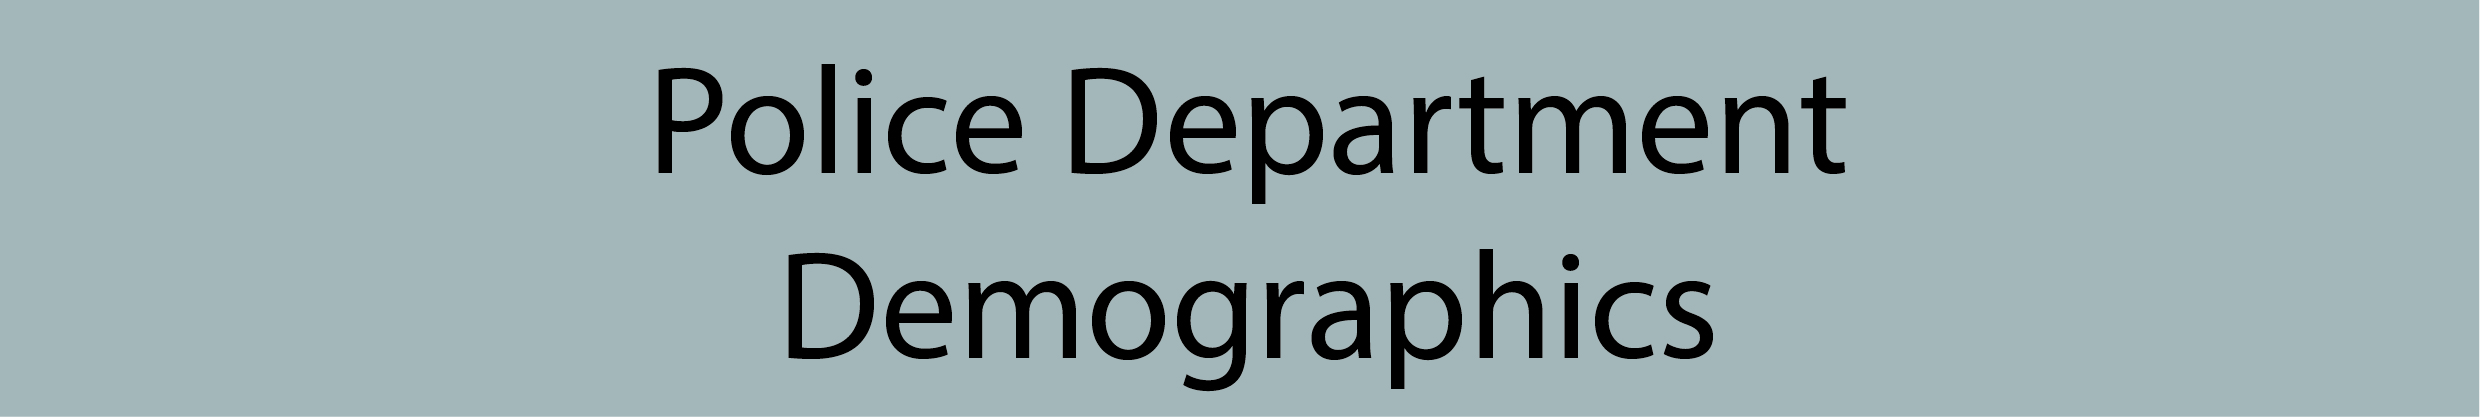 PD Demographics